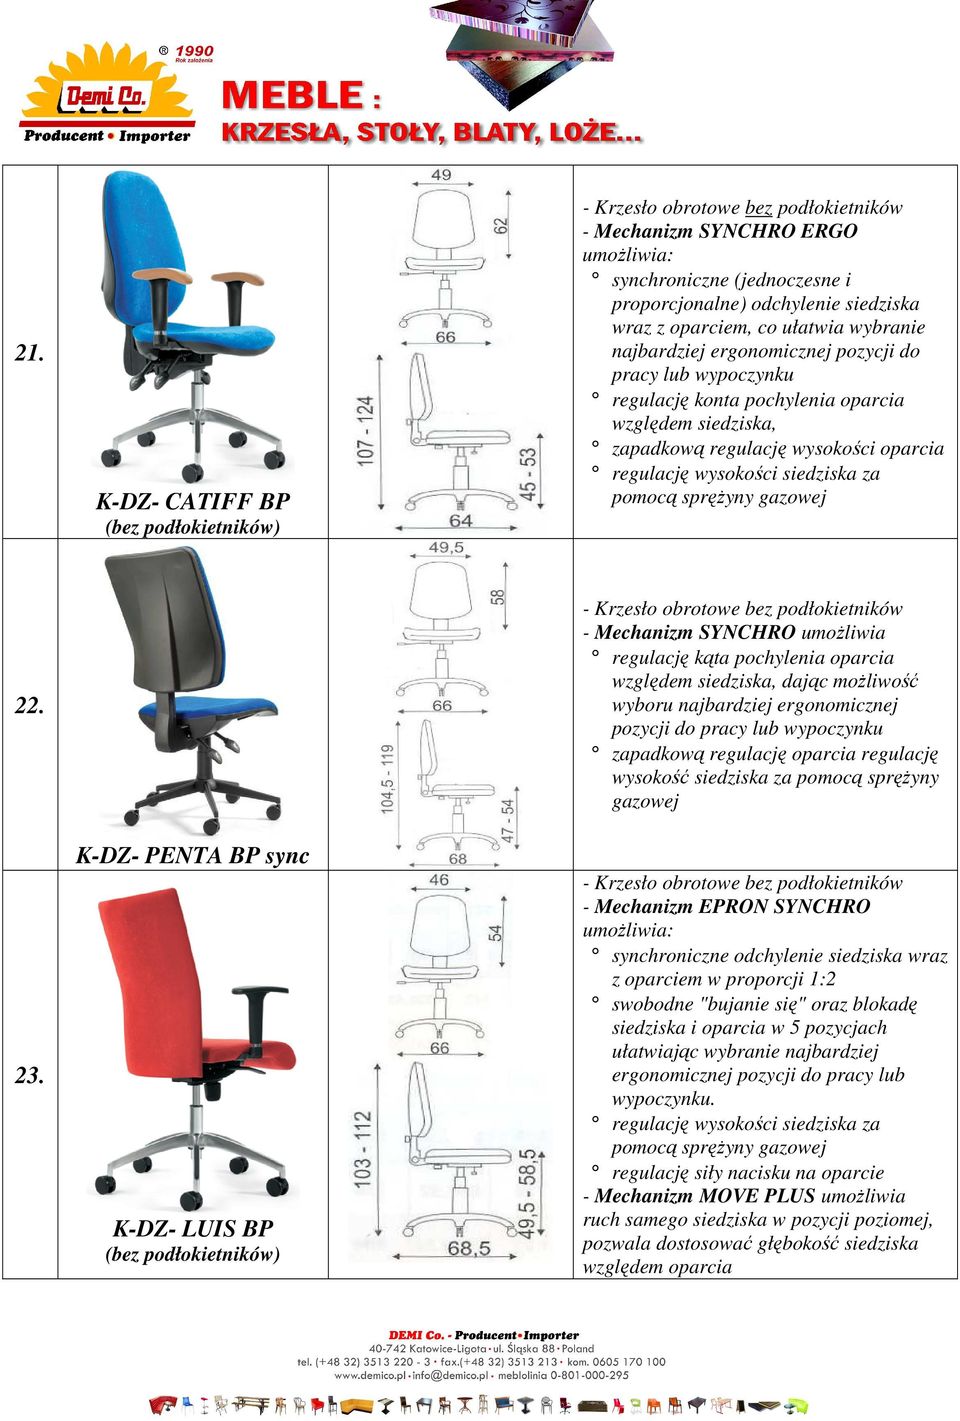 K-DZ- PENTA BP sync K-DZ- LUIS BP - Mechanizm SYNCHRO umożliwia regulację kąta pochylenia oparcia względem siedziska, dając możliwość wyboru najbardziej ergonomicznej pozycji do pracy lub wypoczynku